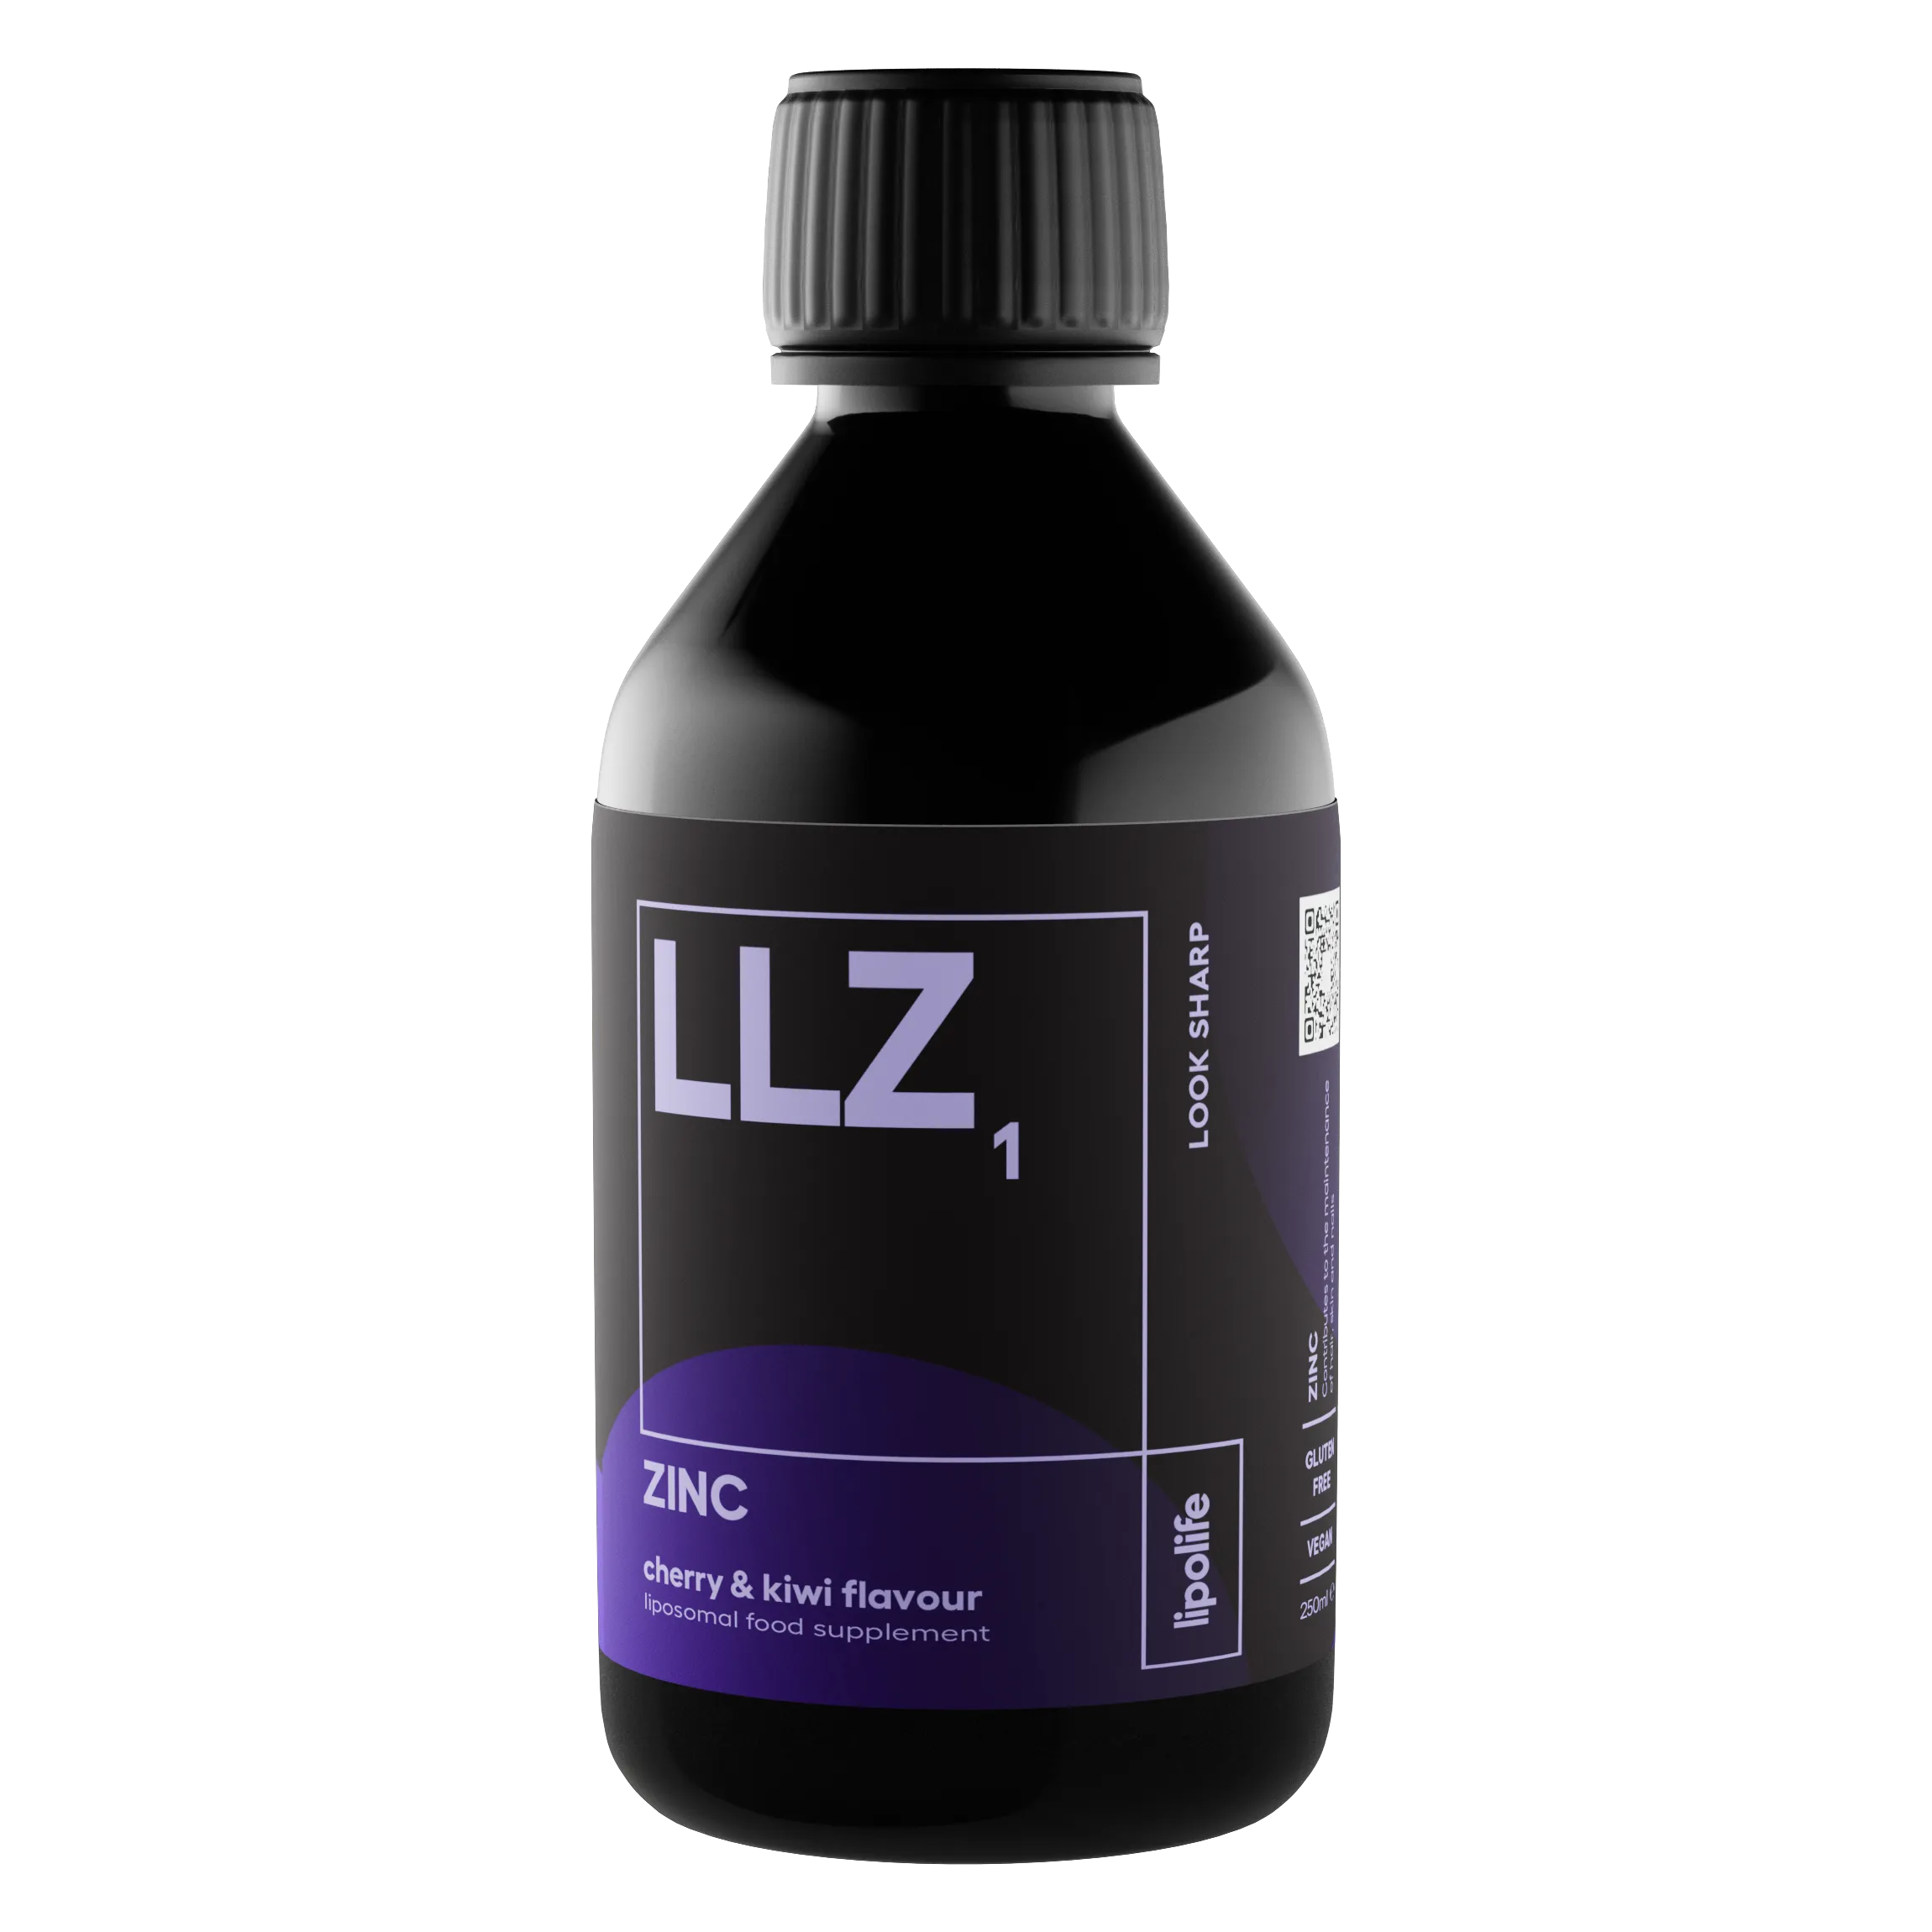 LLZ1 - течен и липозомен цинк - череша и киви, 240 мл.